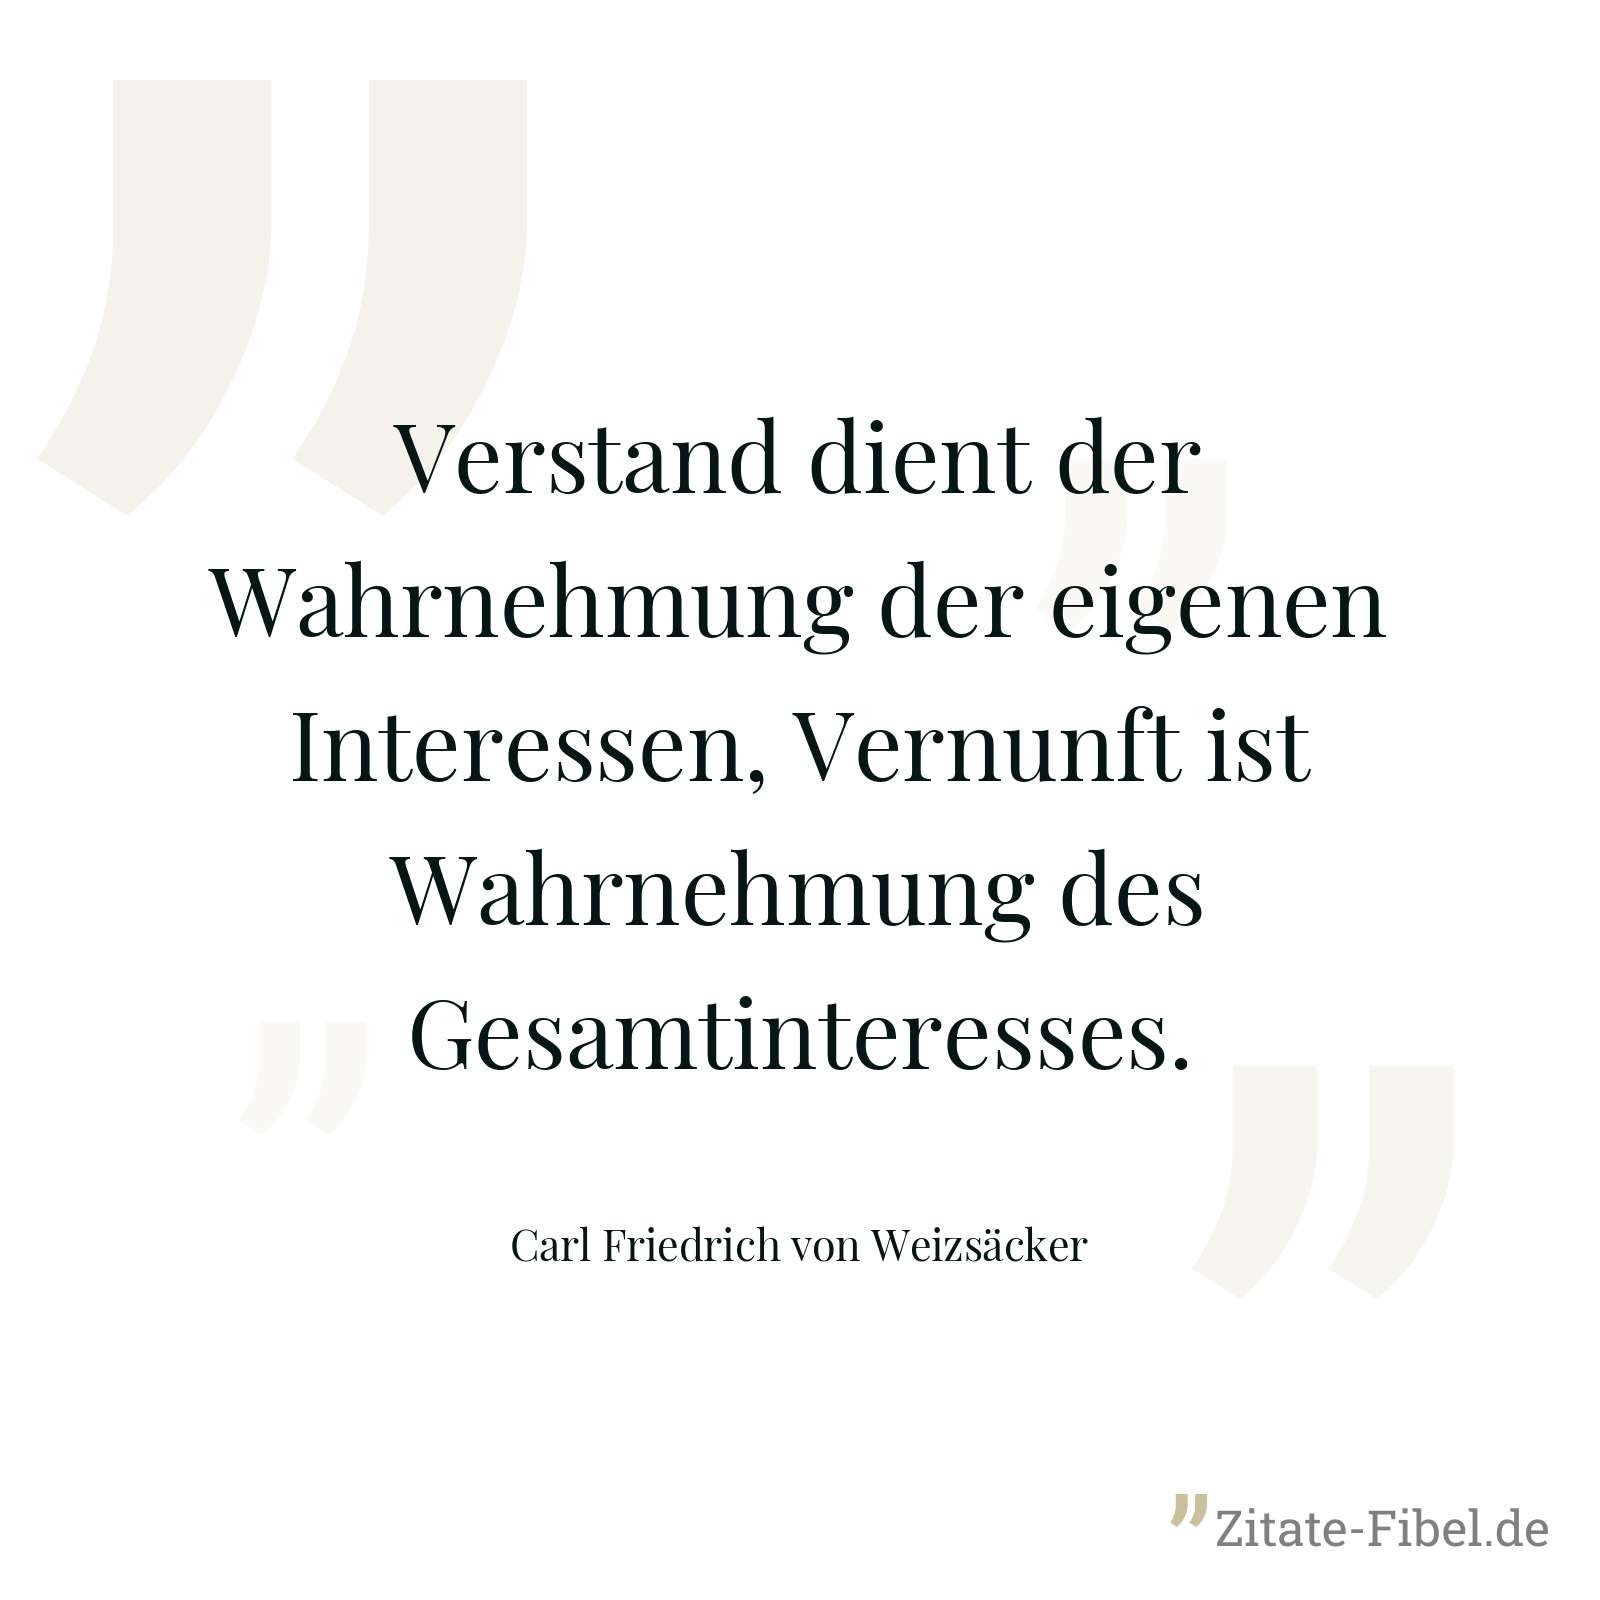 Verstand dient der Wahrnehmung der eigenen Interessen, Vernunft ist Wahrnehmung des Gesamtinteresses. - Carl Friedrich von Weizsäcker